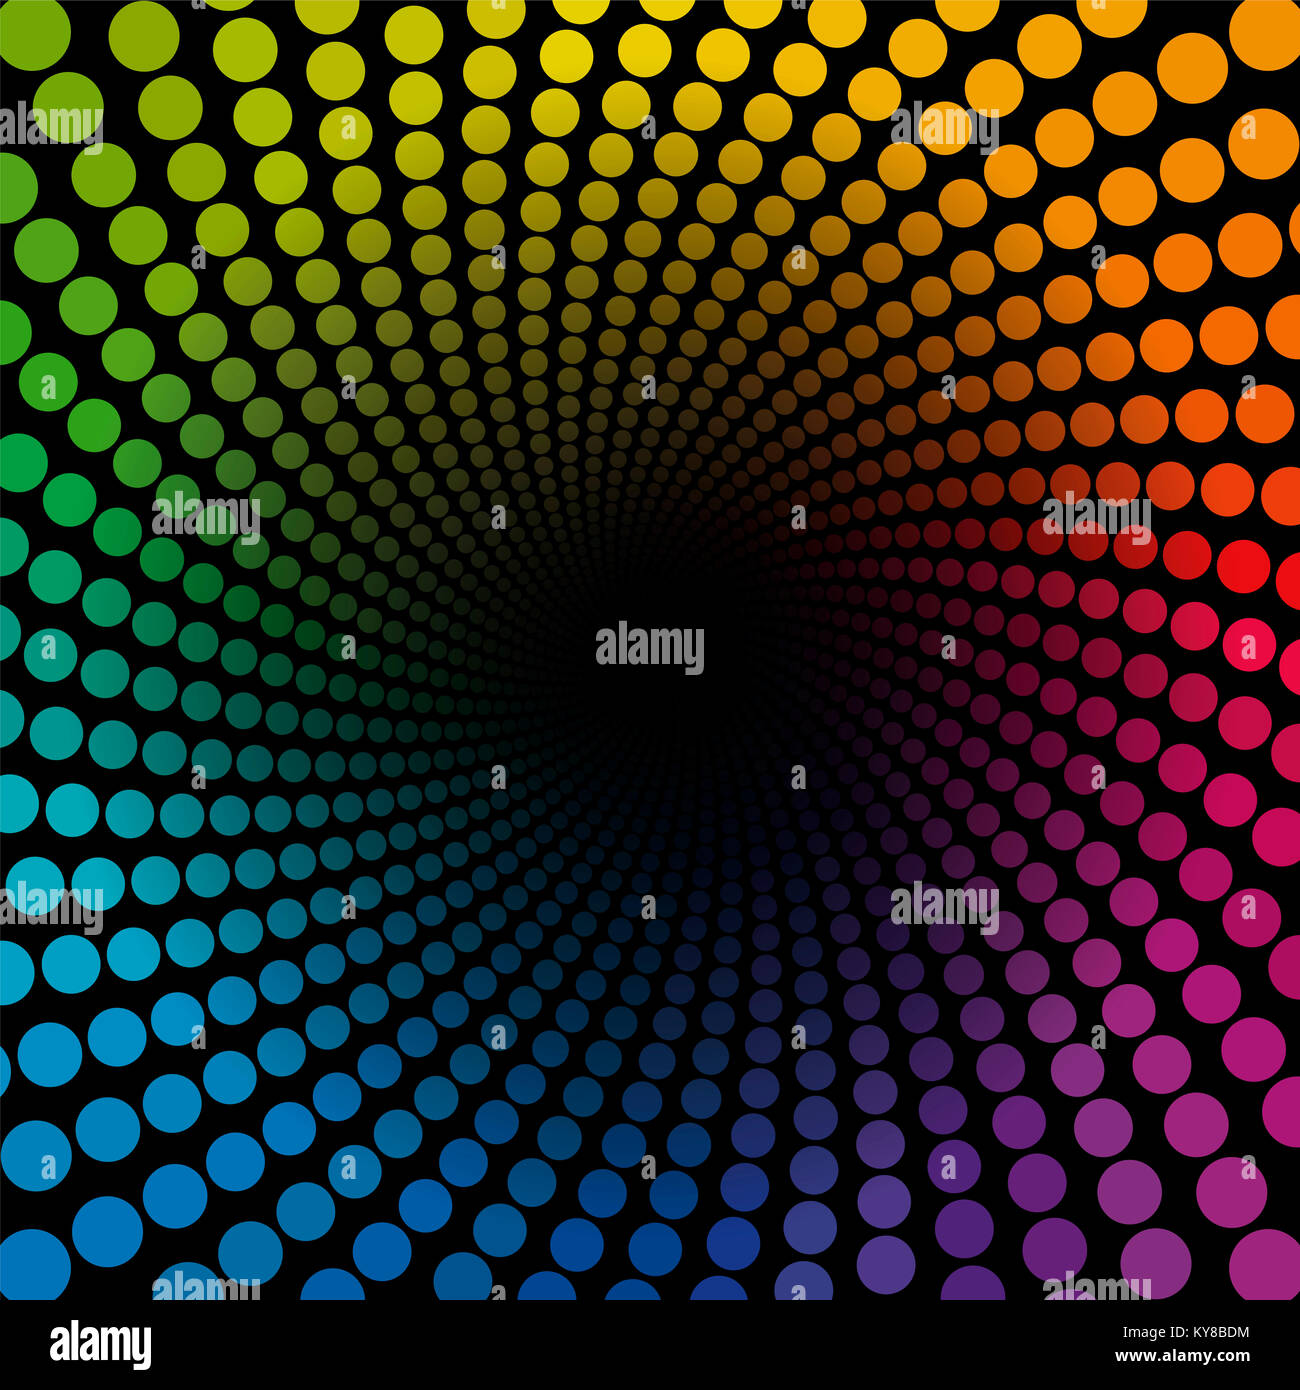 Farbige Spiralschlauch Hintergrund Muster - Regenbogen farbige Punkte Tunnel endet in dunklen Unendlichkeit - Geometrische twisted kreisförmigen Abbildung. Stockfoto